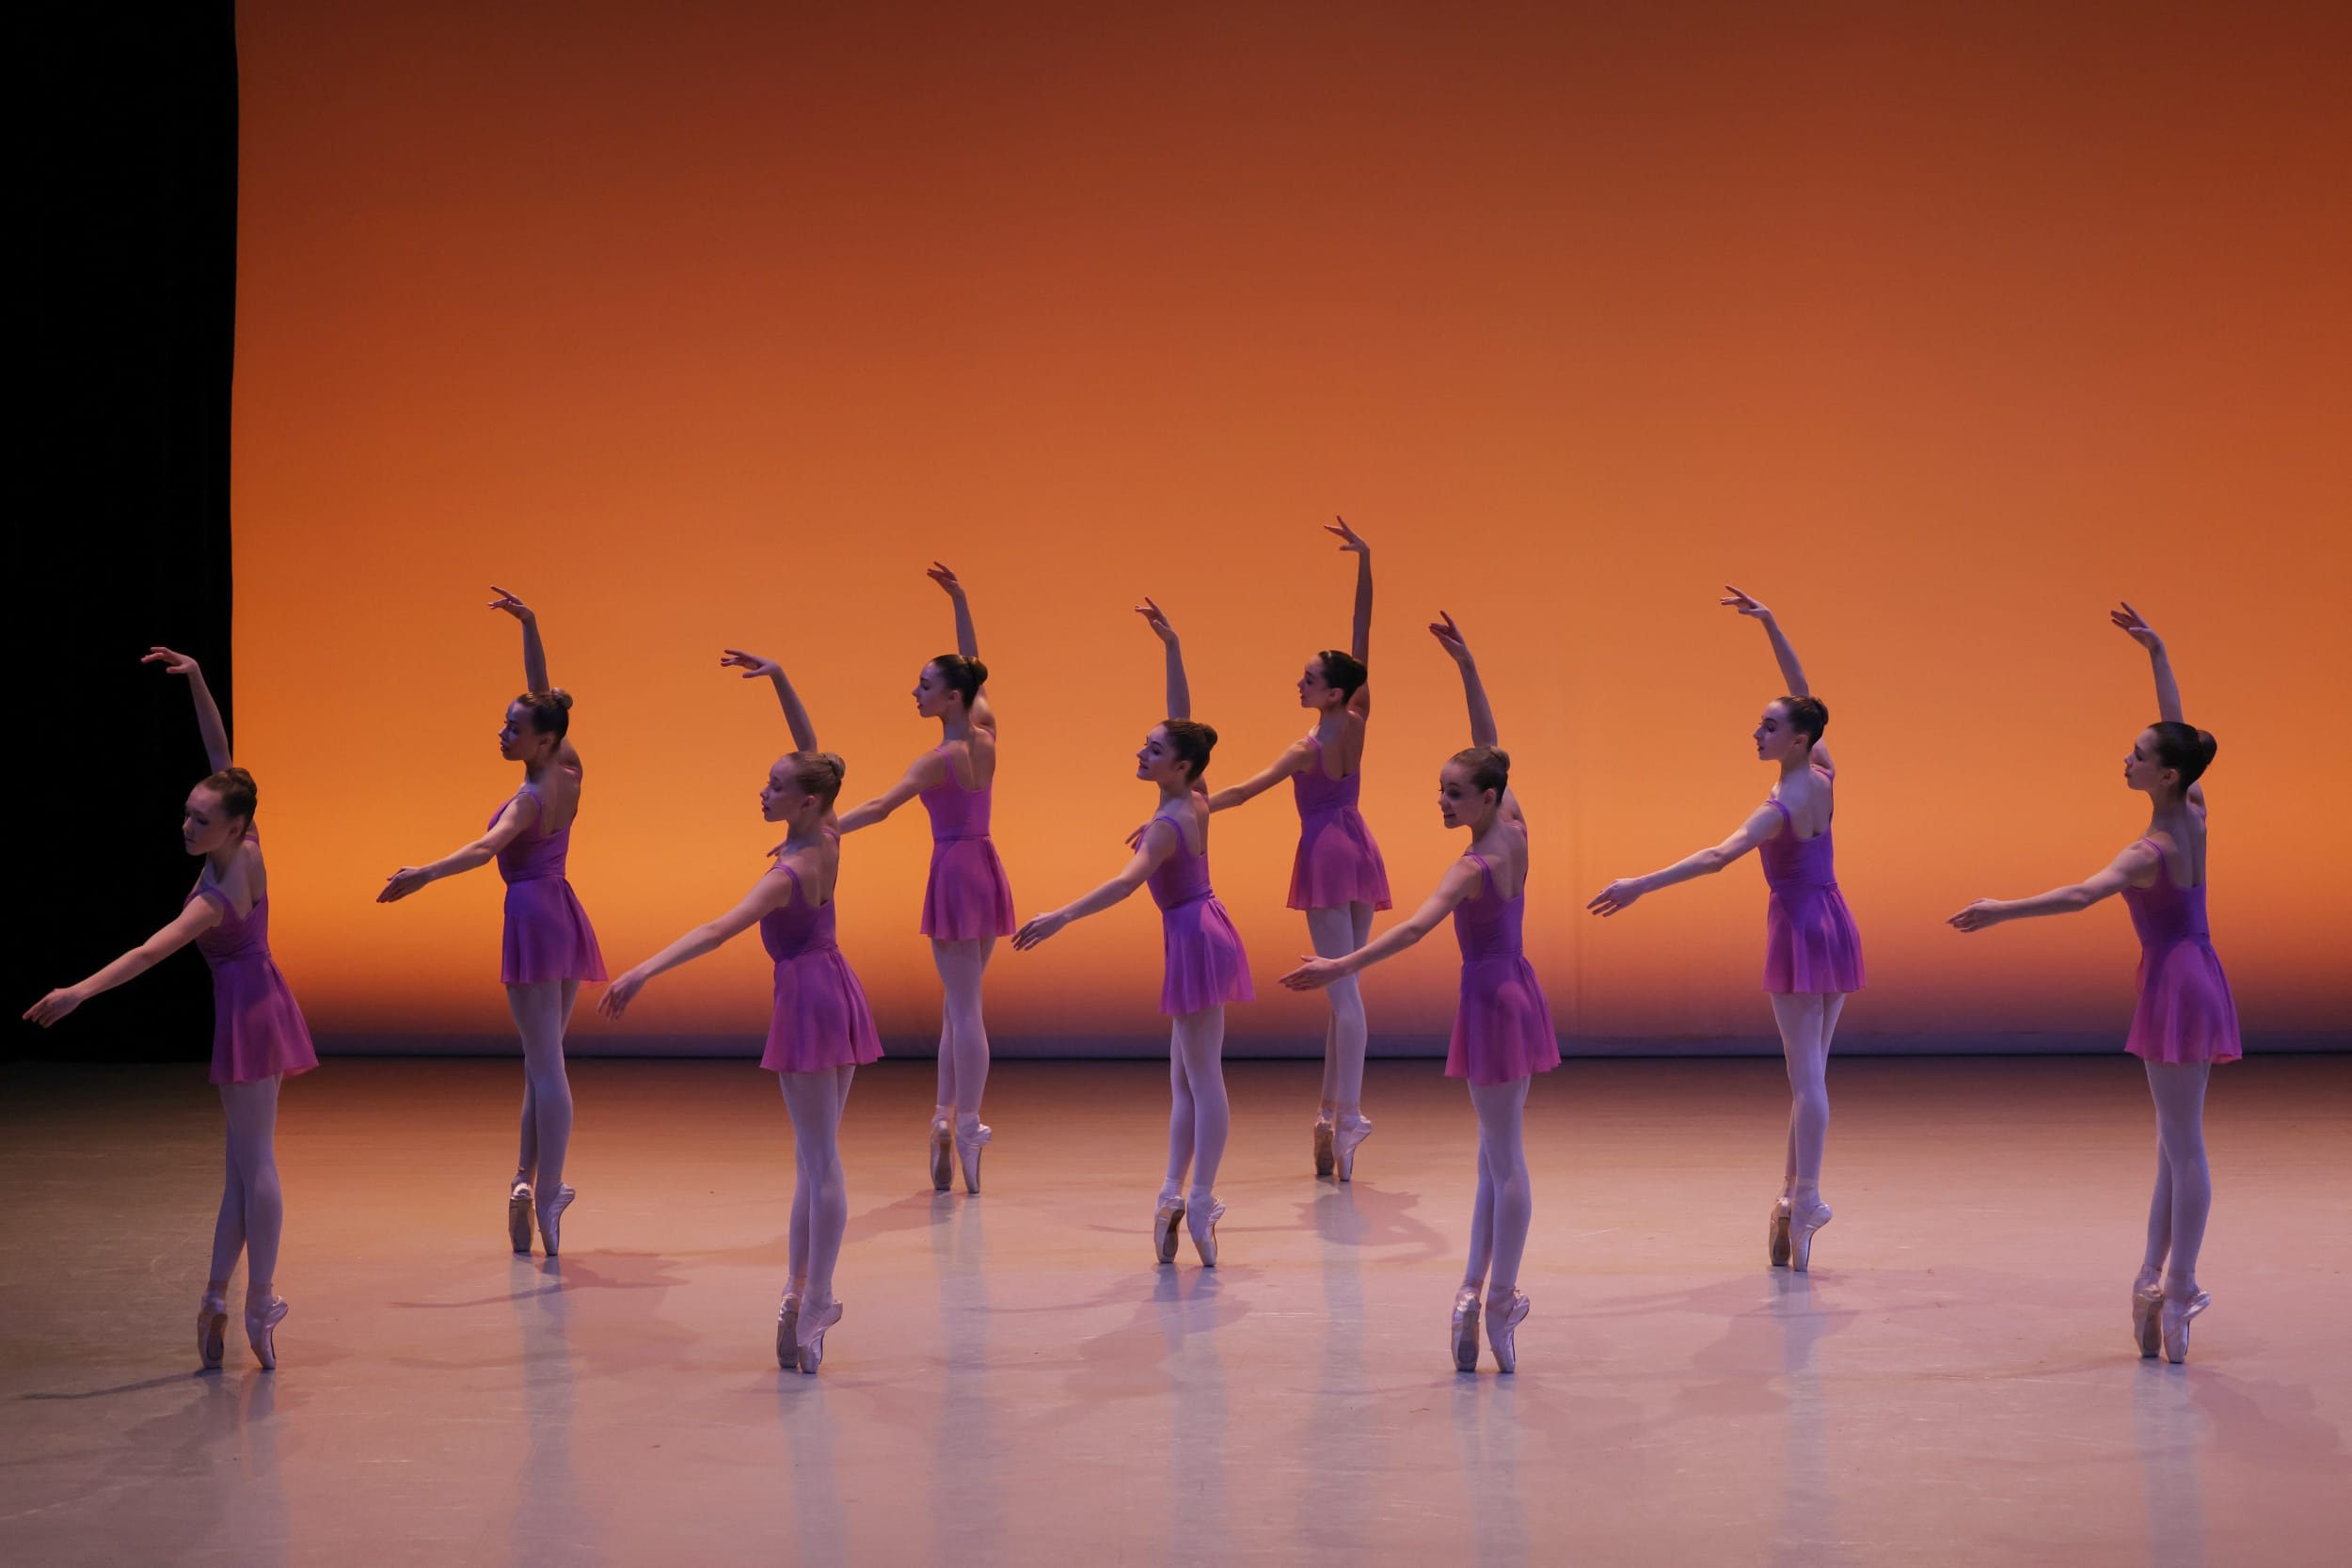 Danse classique filles I - Adage, mazurka, sauts, fouettés / Conservatoire  de Paris (ballet girls) 